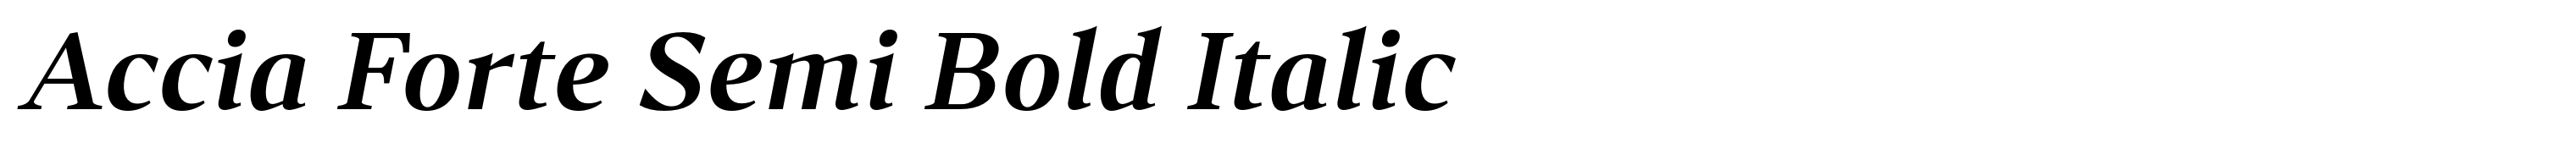 Accia Forte Semi Bold Italic